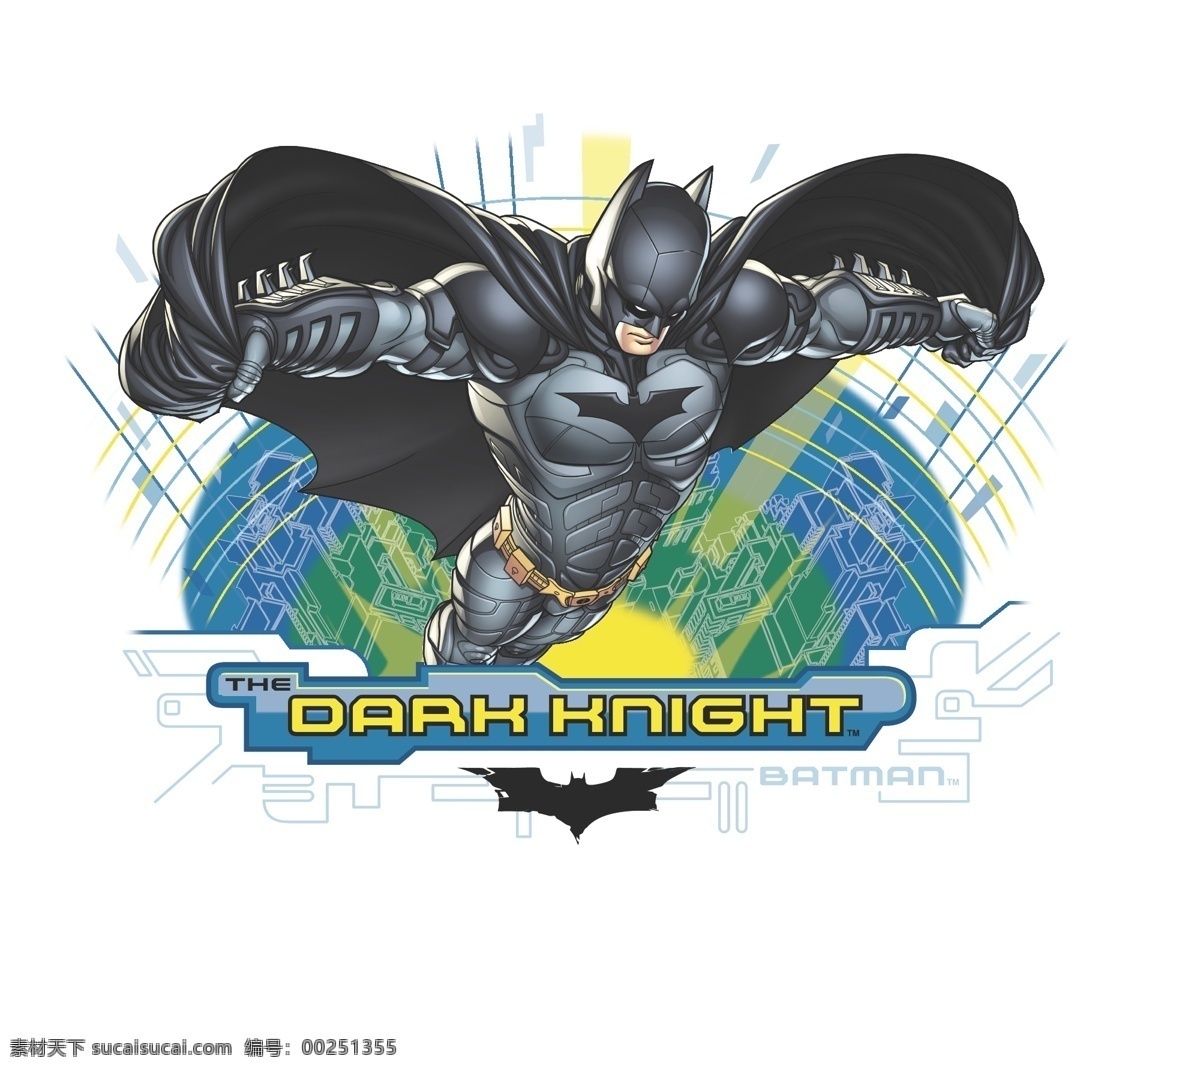 蝙蝠侠 卡通形象 矢量人物 英雄联盟 矢量 模板下载 batman 黑暗骑士 超级英雄 矢量图